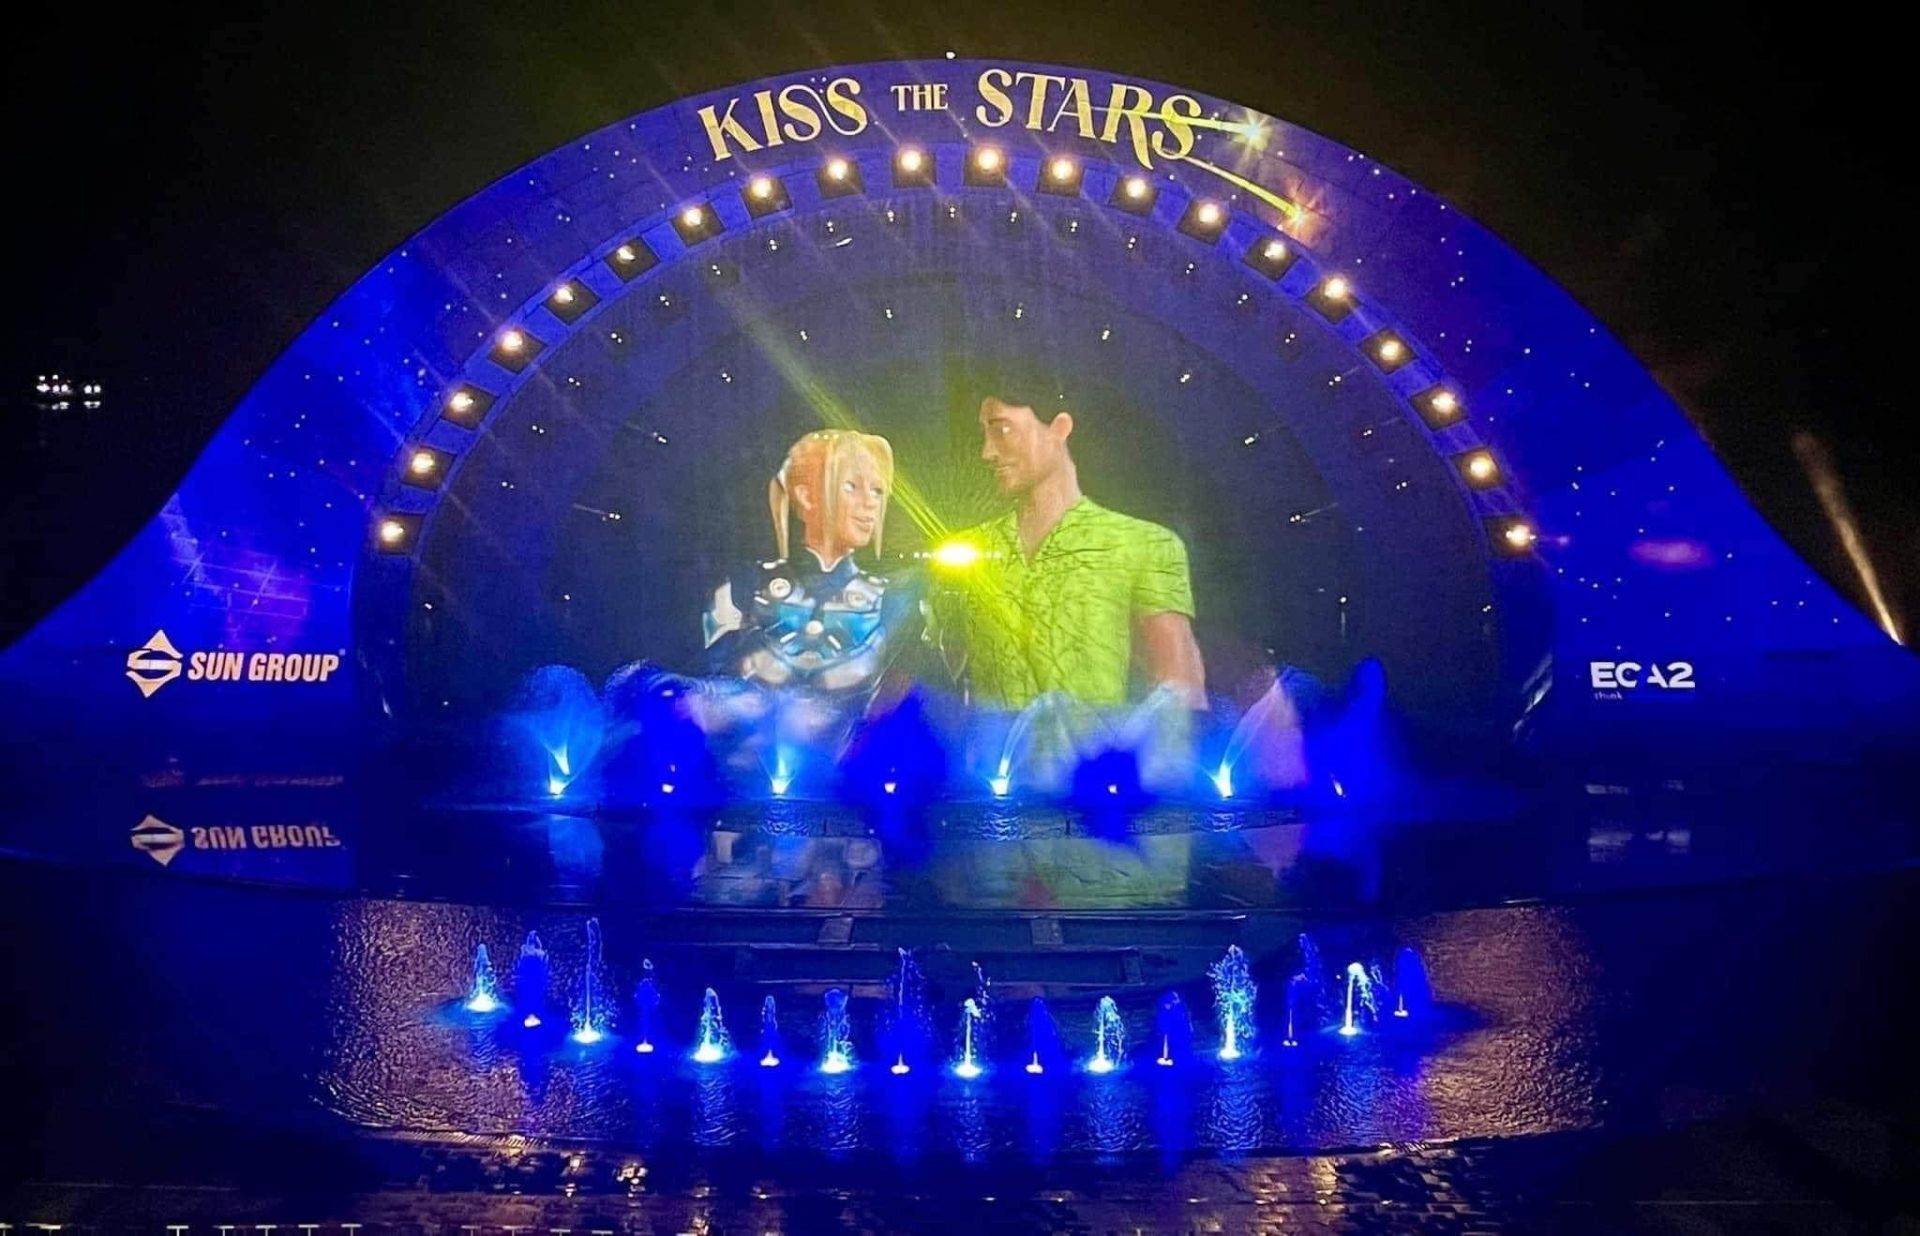 "Kiss The Stars Show - Nụ hôn giữa ngàn sao", sản phẩm nghệ thuật mới nhất của Sun Group sẽ chính thức được ra mắt tại thị trấn Hoàng Hôn